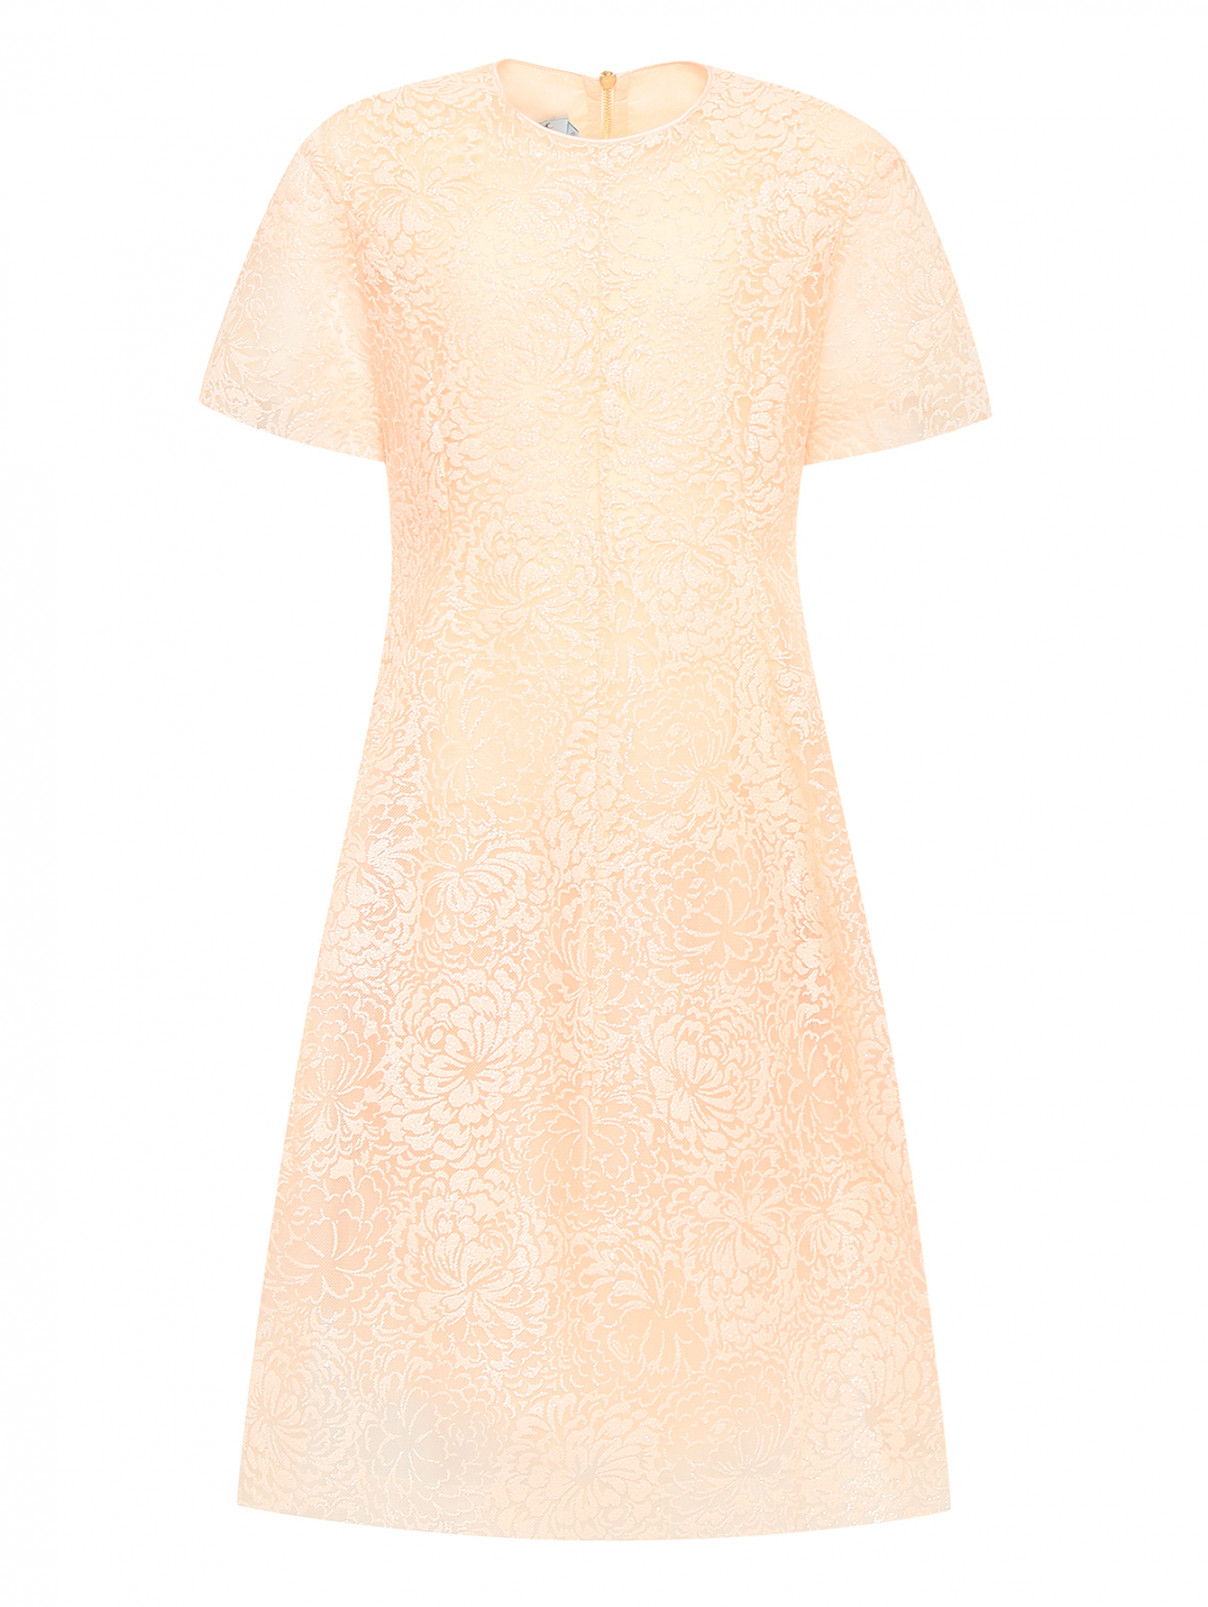 Платье с блеском с коротким рукавом MiMiSol  –  Общий вид  – Цвет:  Оранжевый